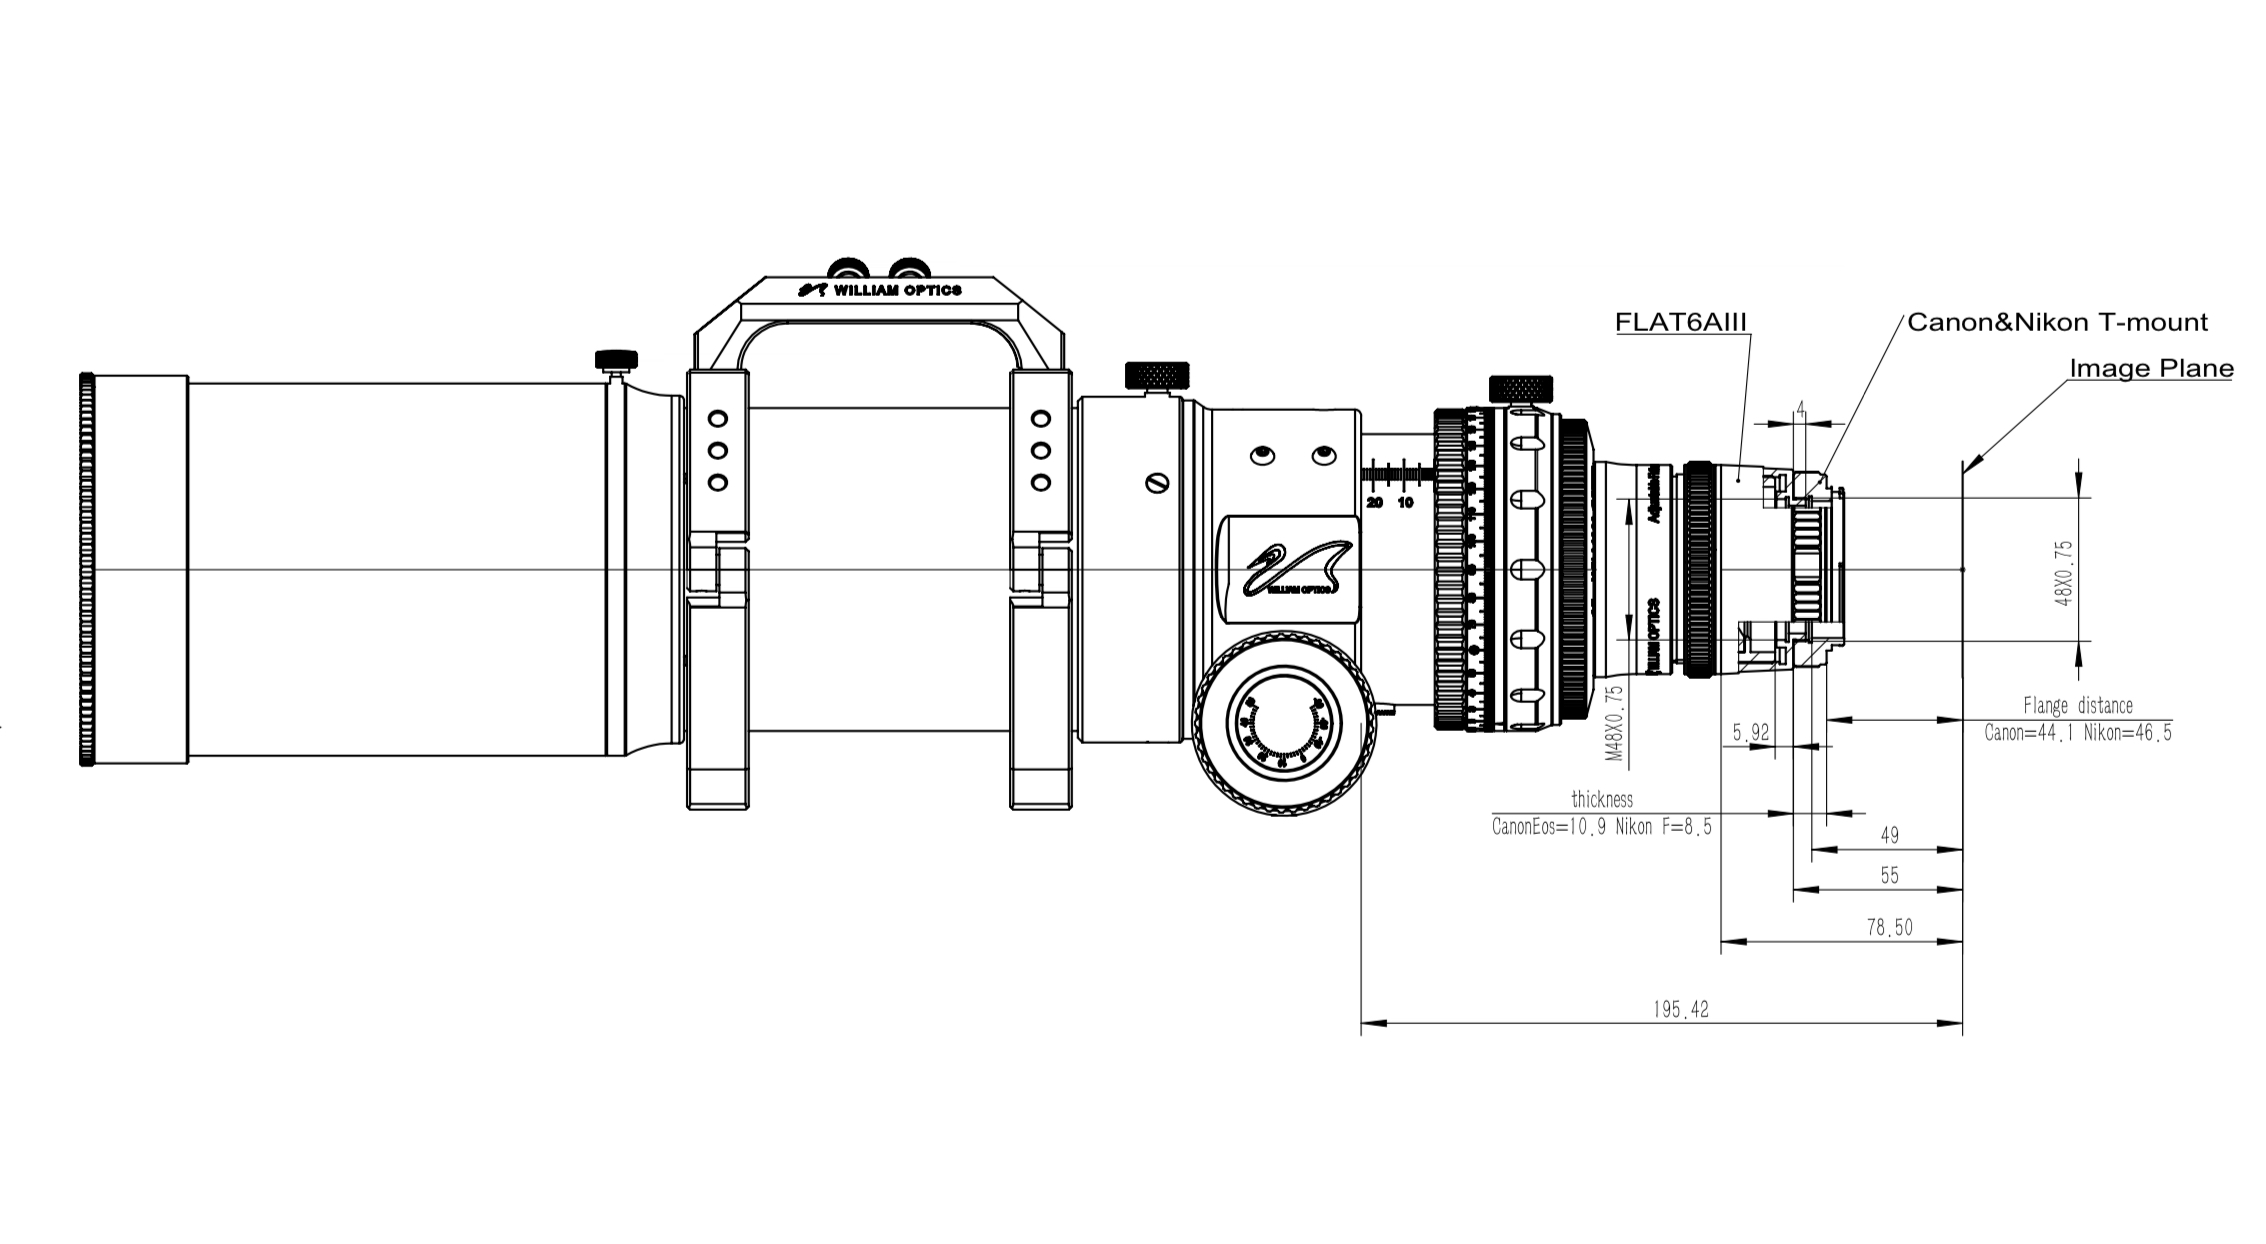 William Optics Adjustable Flattener 6A III for FLT91 Settings